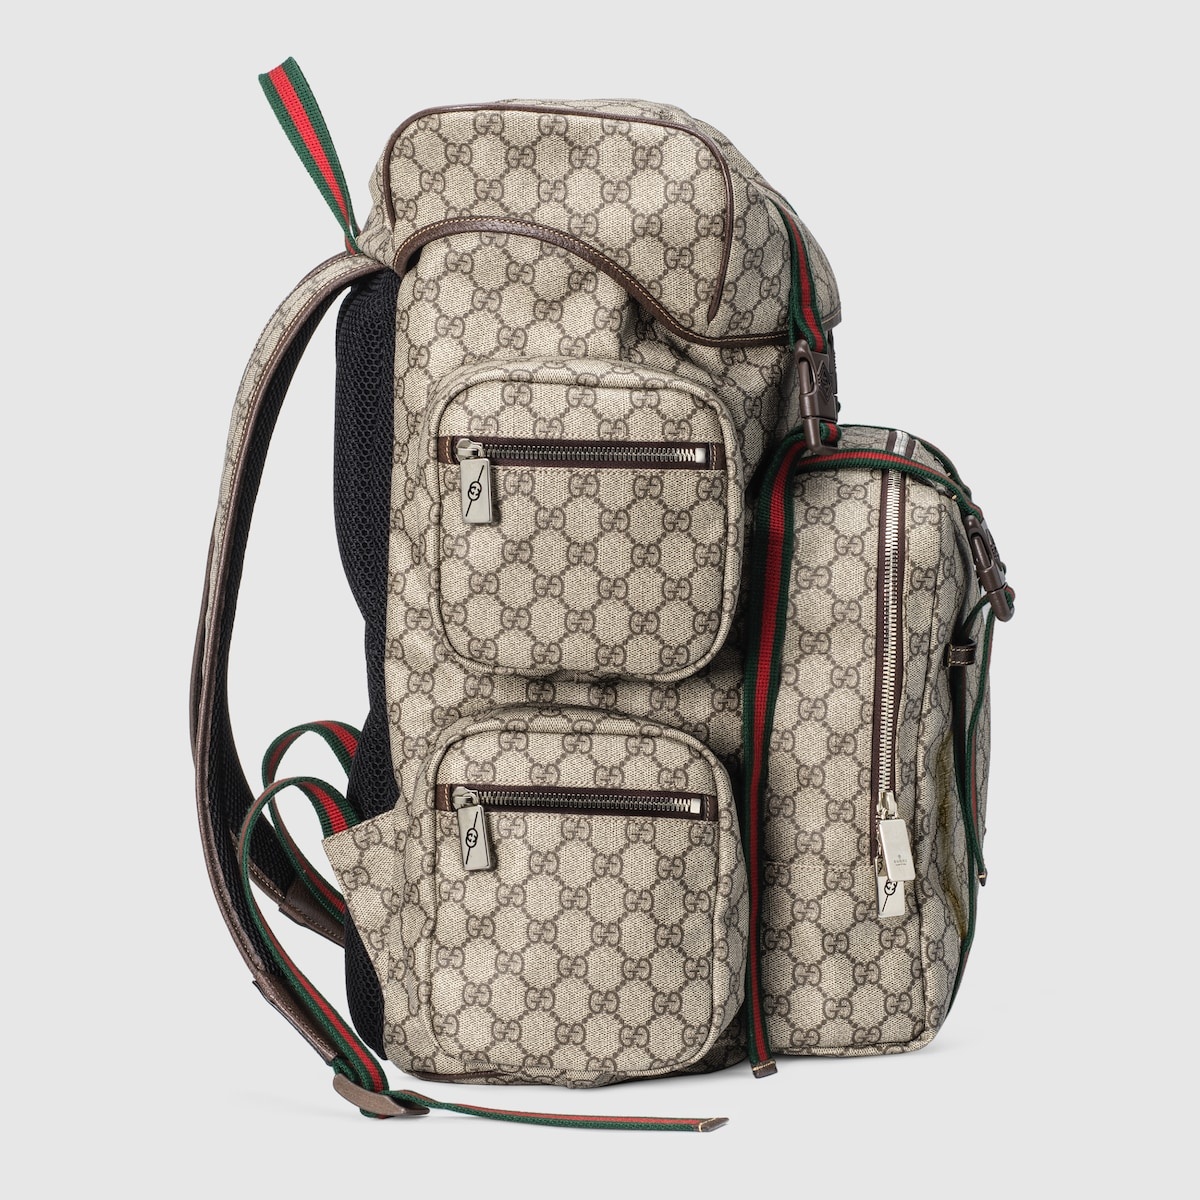 GG backpack - 5